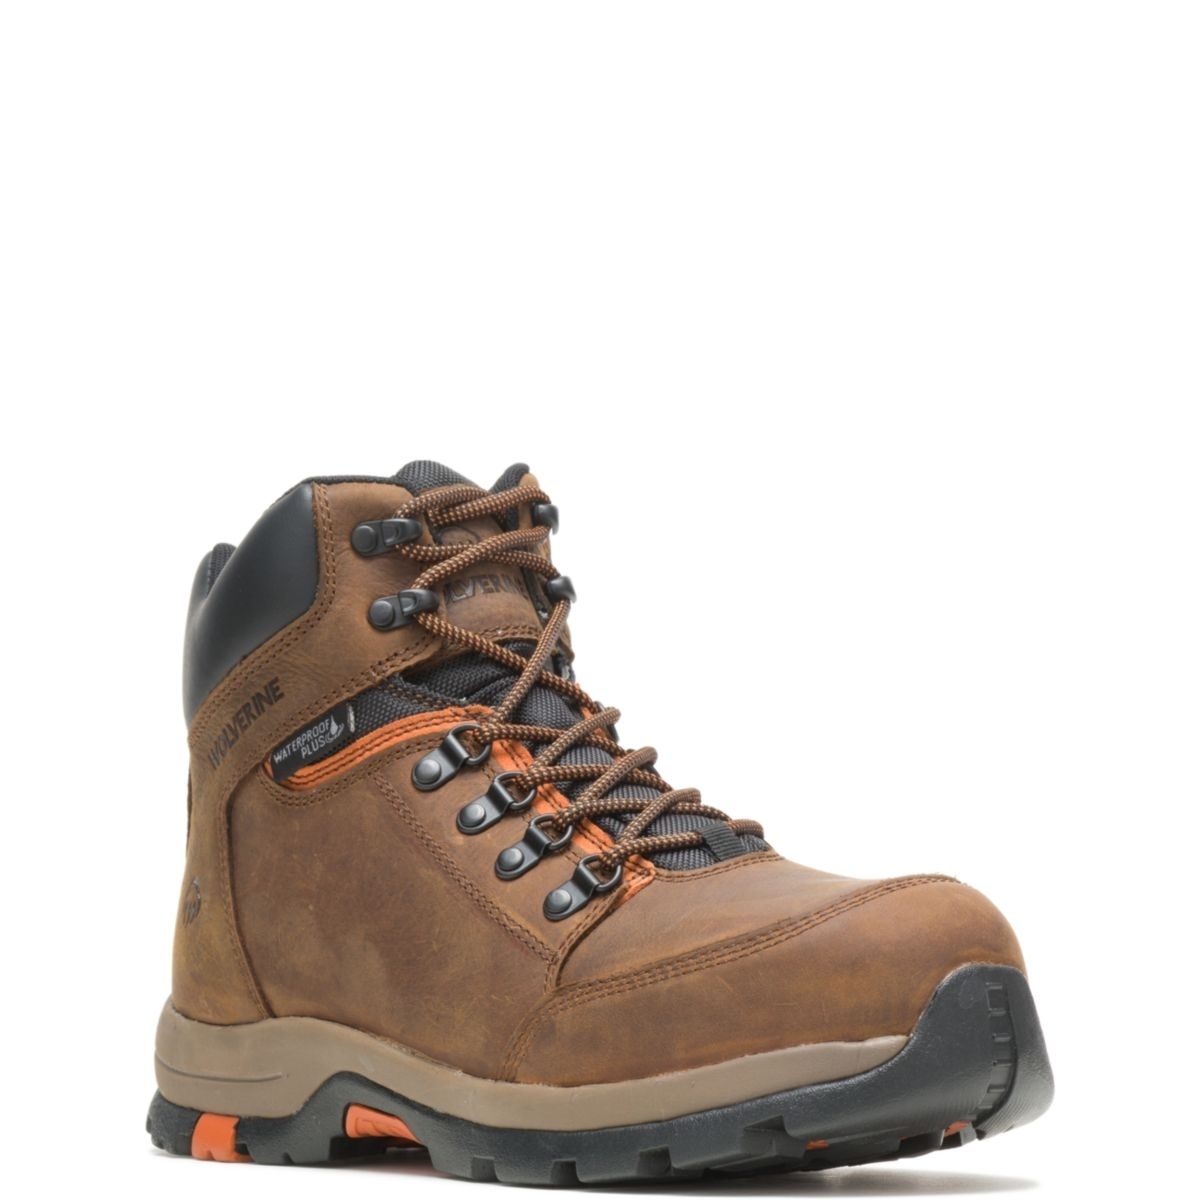 WOLVERINE Men's Grayson Steel Toe Waterproof Work Boot Brown - W211043 BROWN - BROWN, 11